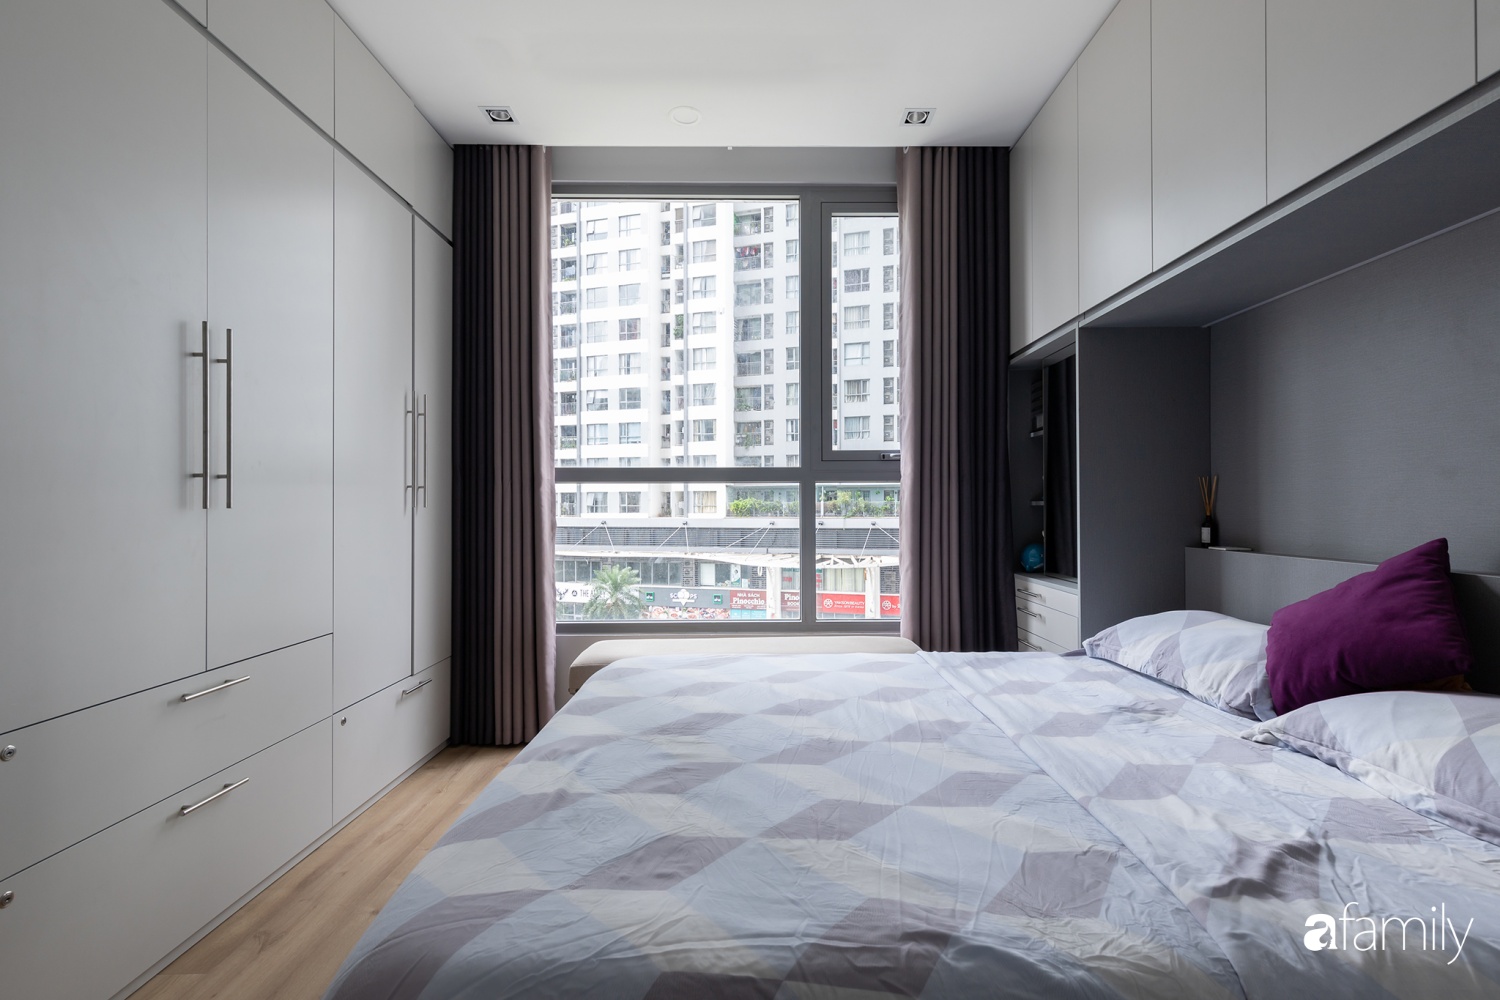 Căn hộ 74m² thiết kế ấn tượng theo phong cách Art Decor có chi phí hoàn thiện 300 triệu đồng ở Hà Nội - Ảnh 12.